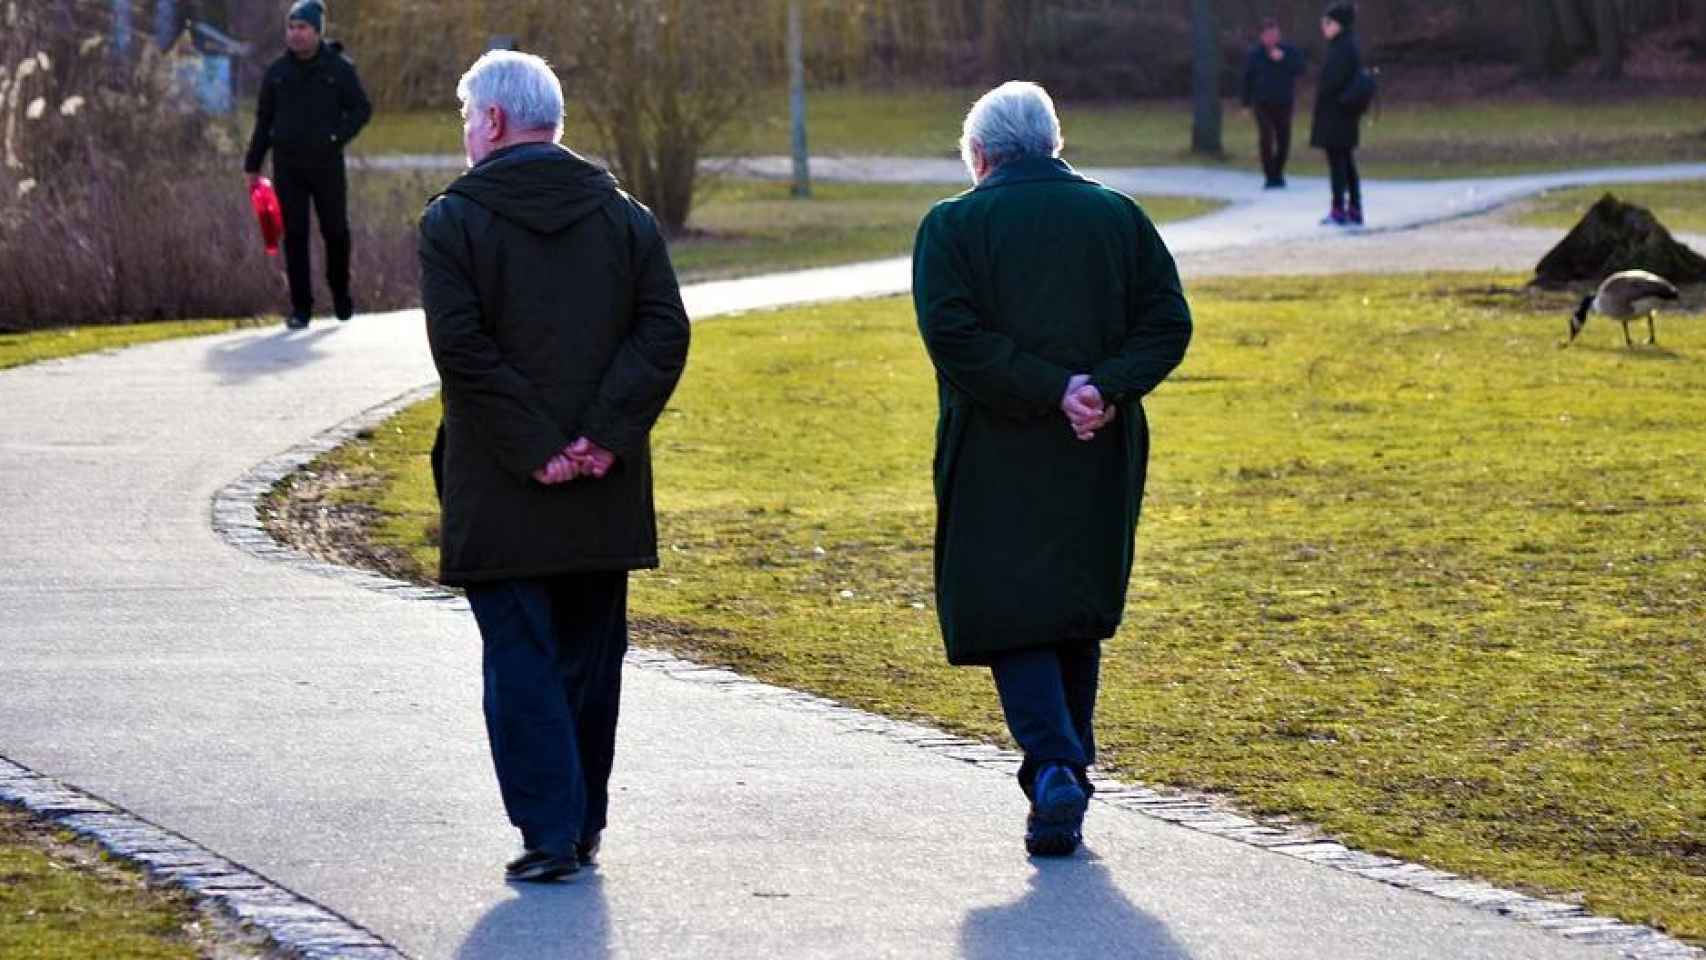 Dos personas mayores andando por un parque. / Pixabay